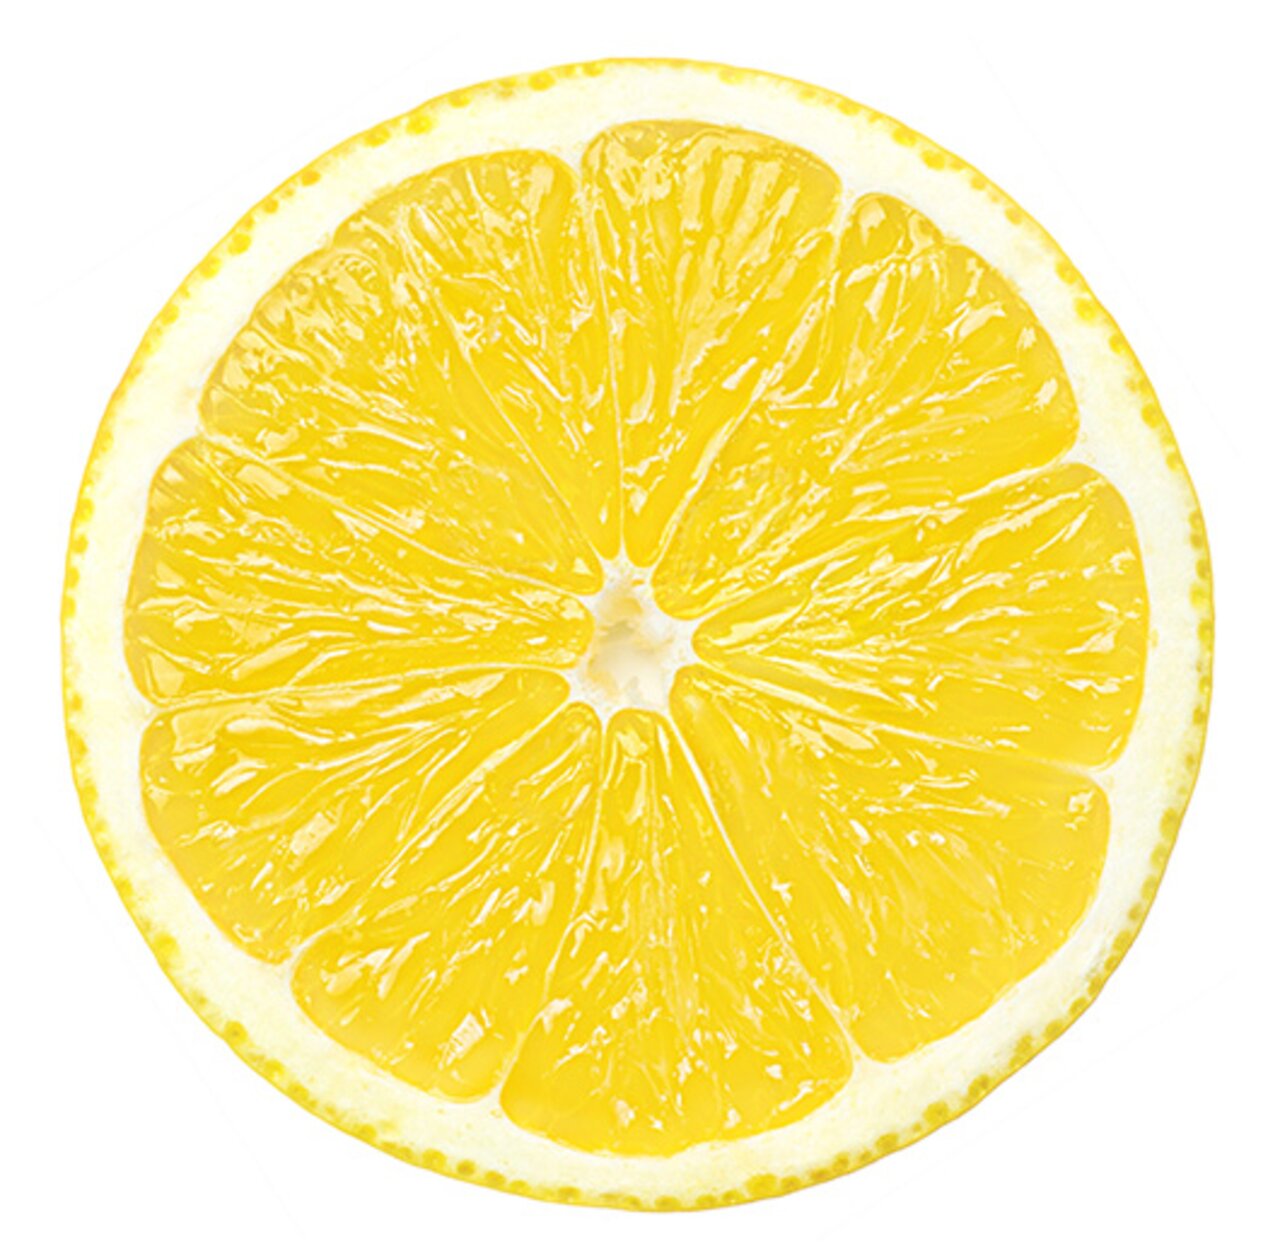 Aufgeschnittene saftige Zitrone auf weißem Hintergrund als Sinnbild für Vitamin C als Bestandteil einer gesunden und ausgewogenen Ernährung